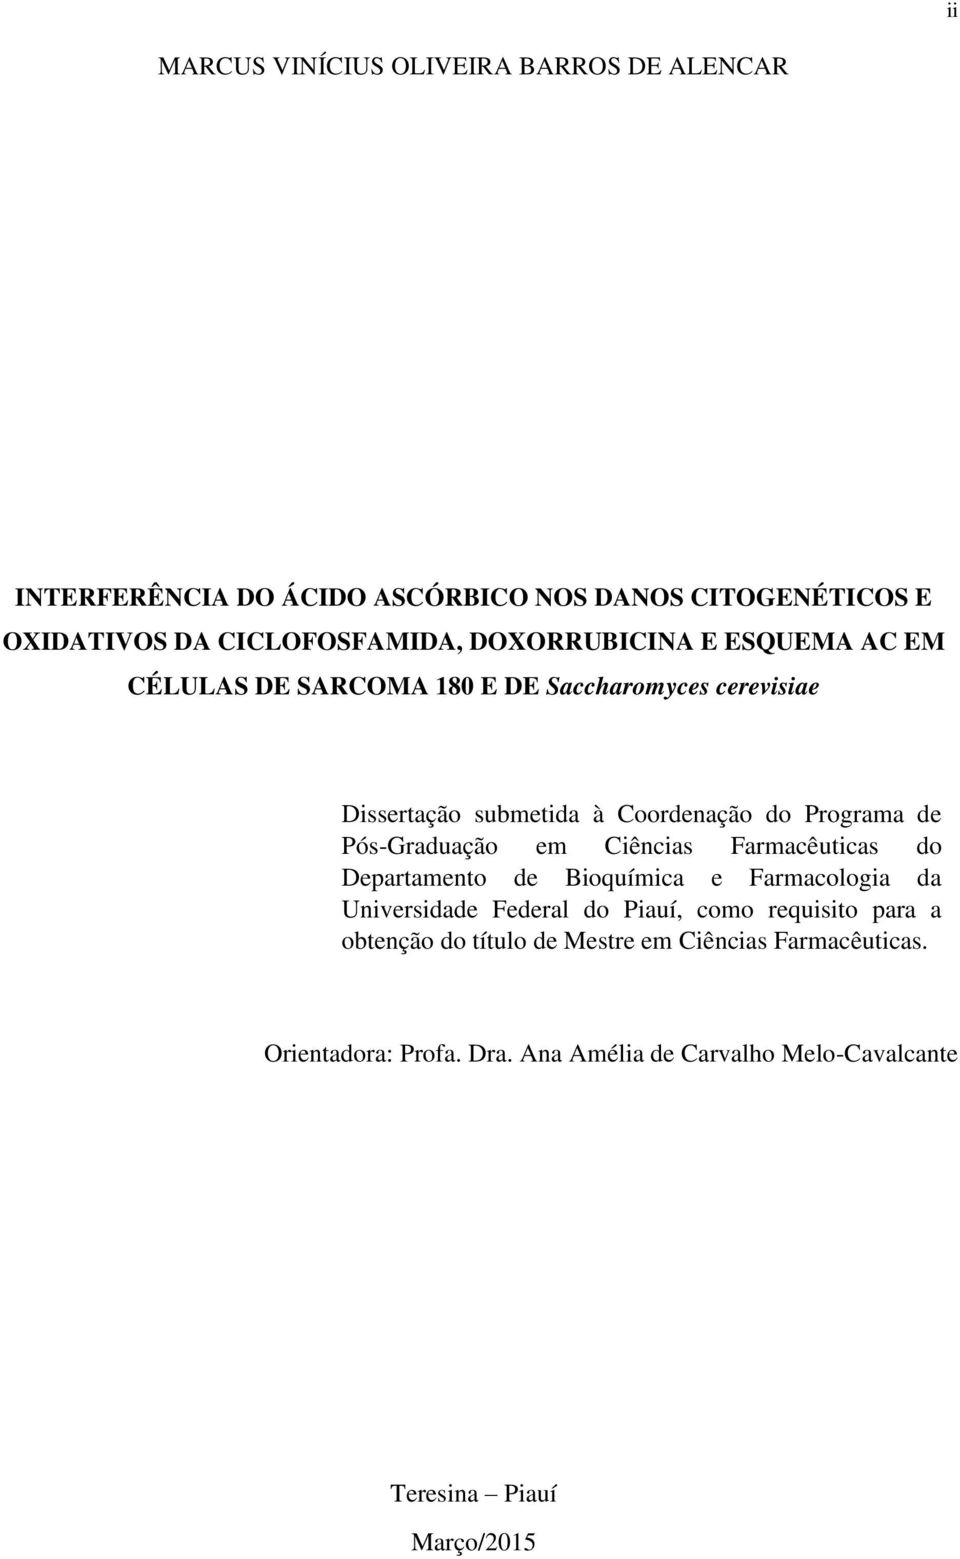 Pós-Graduação em Ciências Farmacêuticas do Departamento de Bioquímica e Farmacologia da Universidade Federal do Piauí, como requisito para